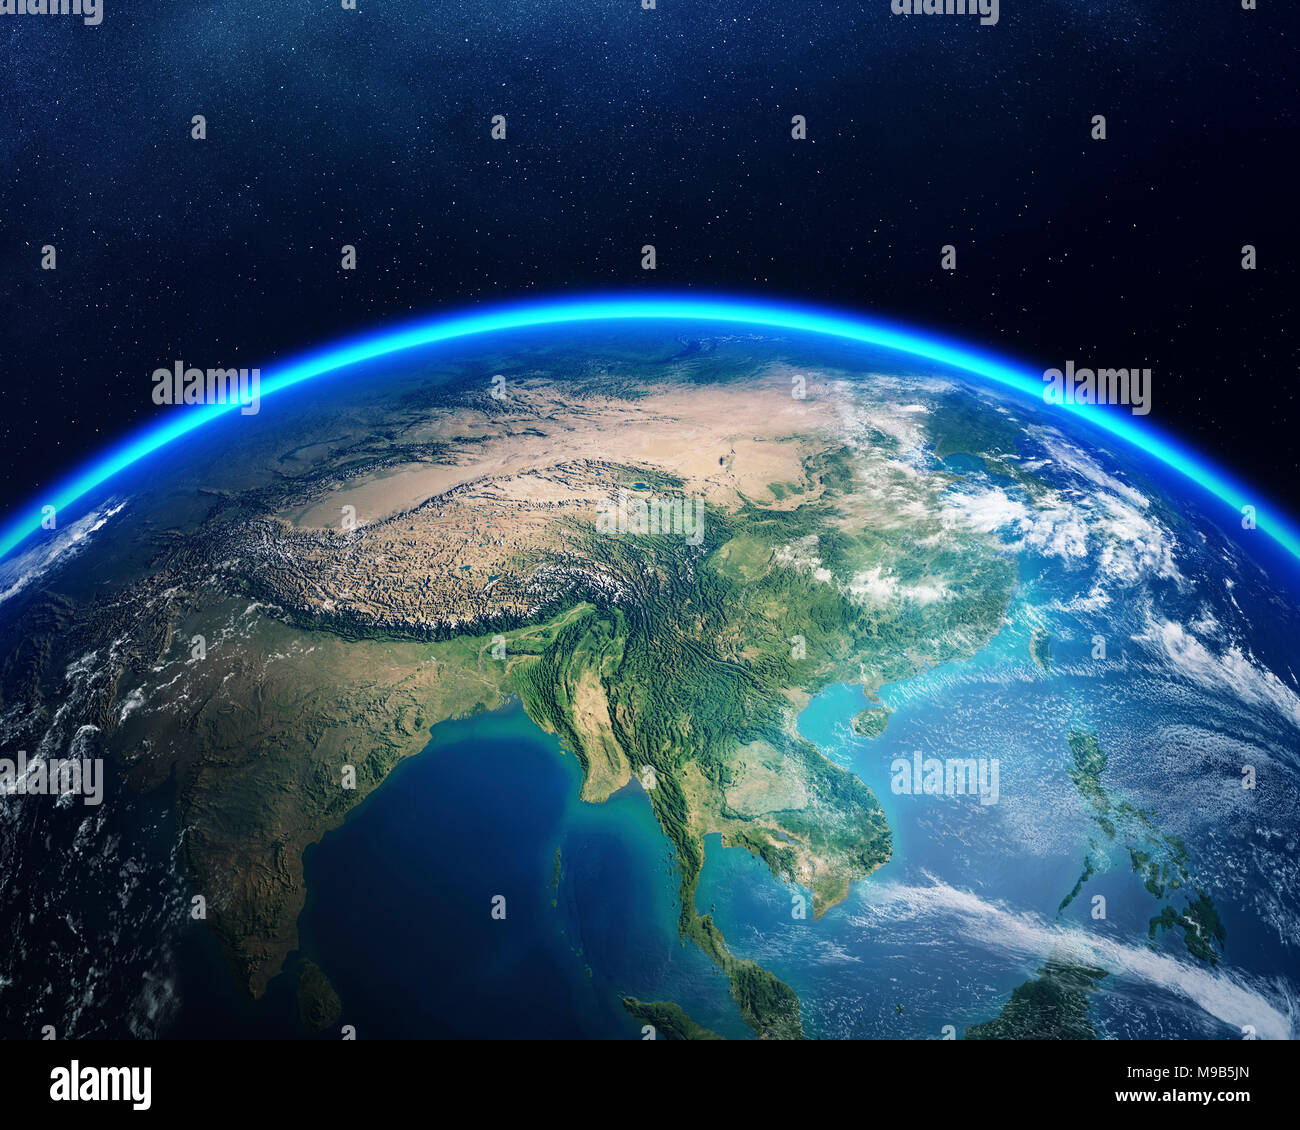 Terre vue de l'espace avec l'accent sur l'Asie. Rendu 3D détaillées contre the Starry night sky (éléments de ce meublé de rendu par la NASA) Banque D'Images